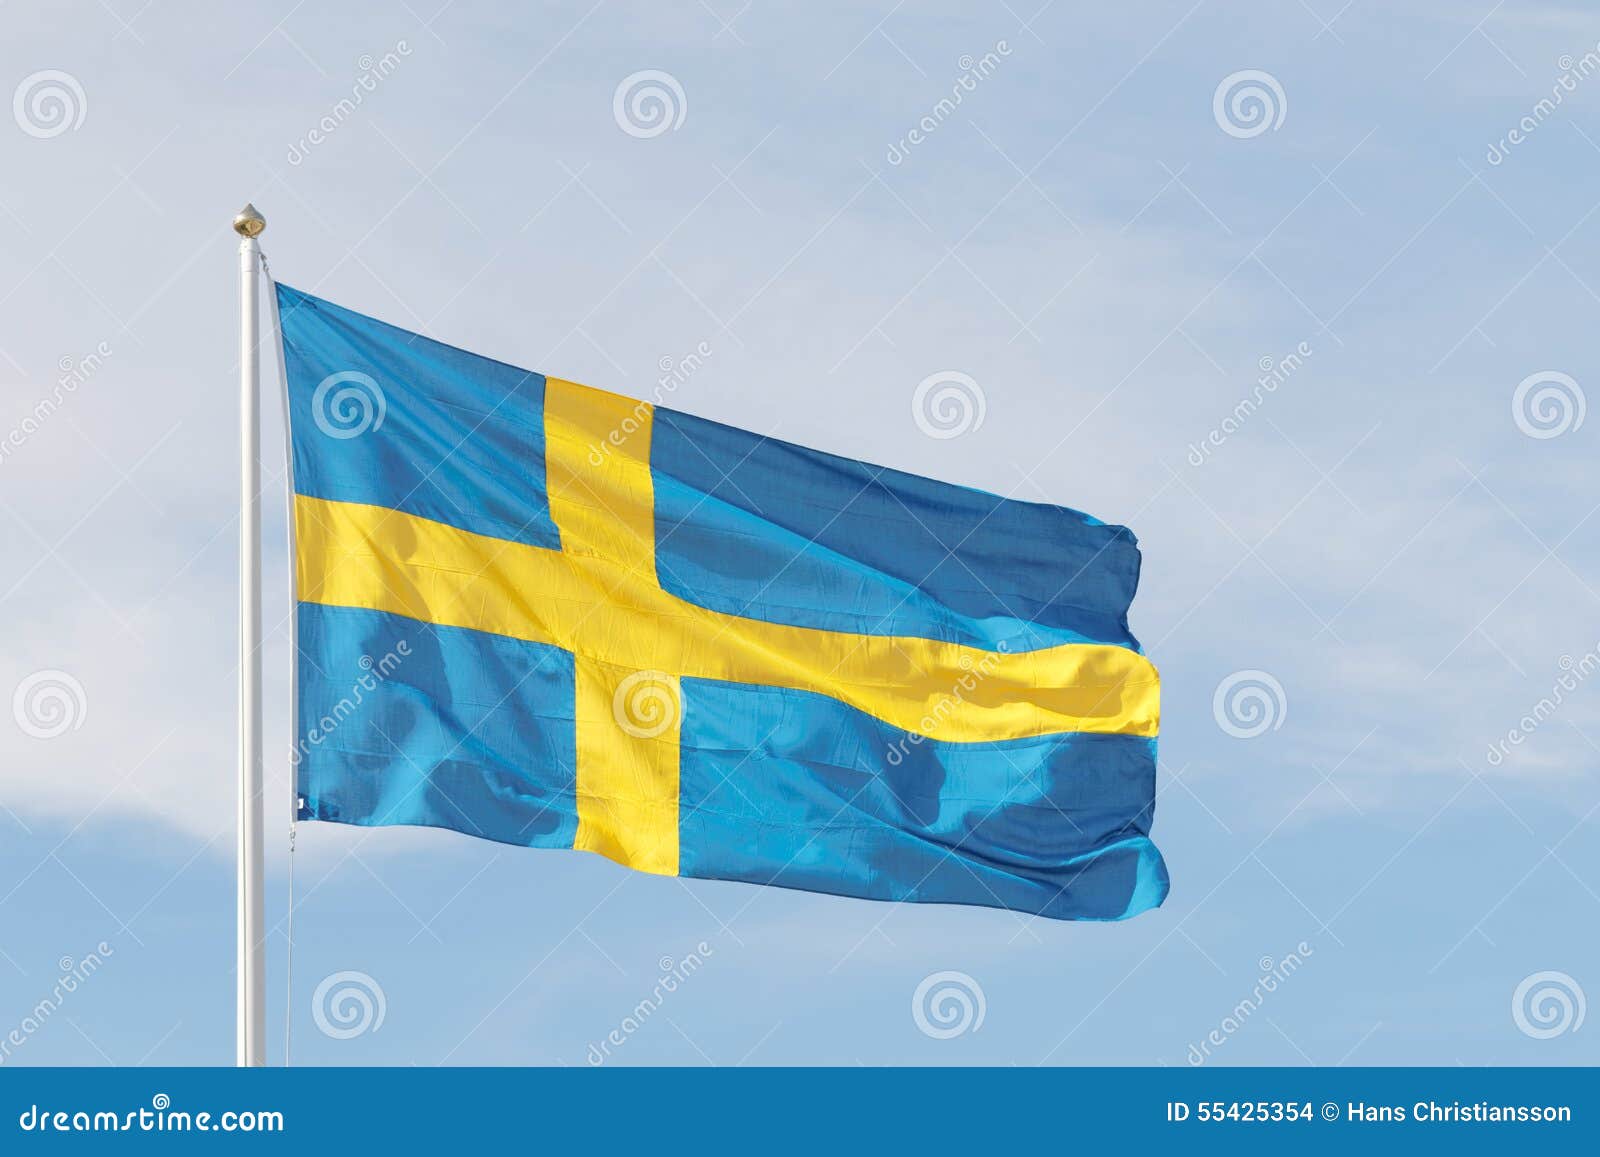 Как называется желто синий флаг. Желто голубой флаг. Голубой флаг с желтым рисунком. Сине желтый флаг Швеция. Синий флаг с желтым крестом.